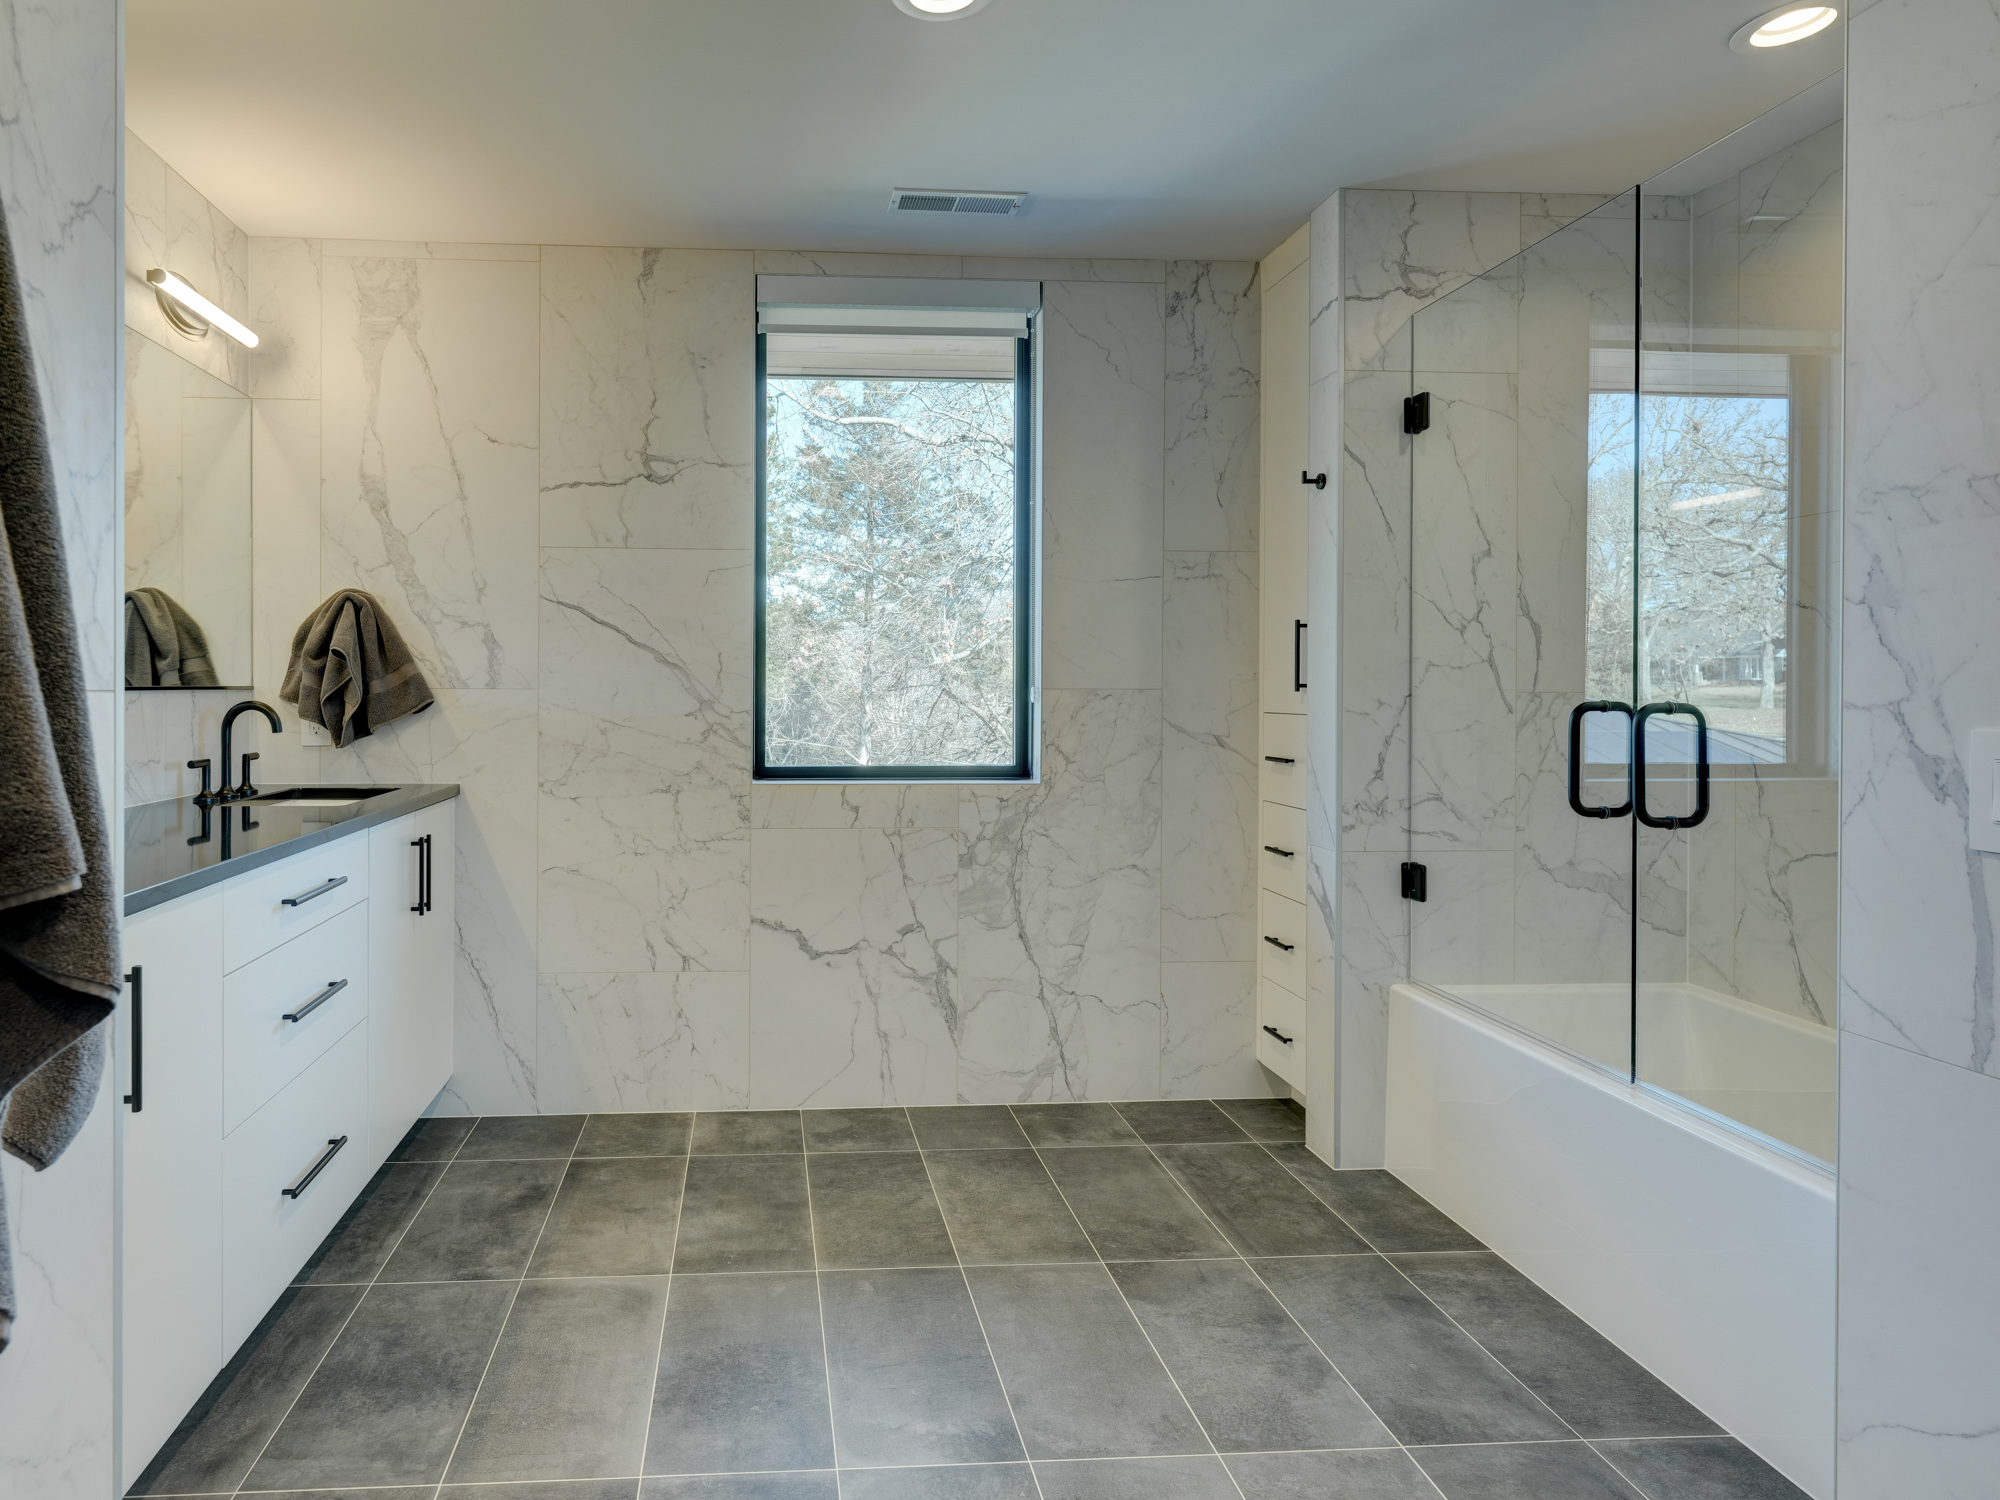 Natural Bridge Home Ellecor Interior Design 41 Small Bathroom Side View